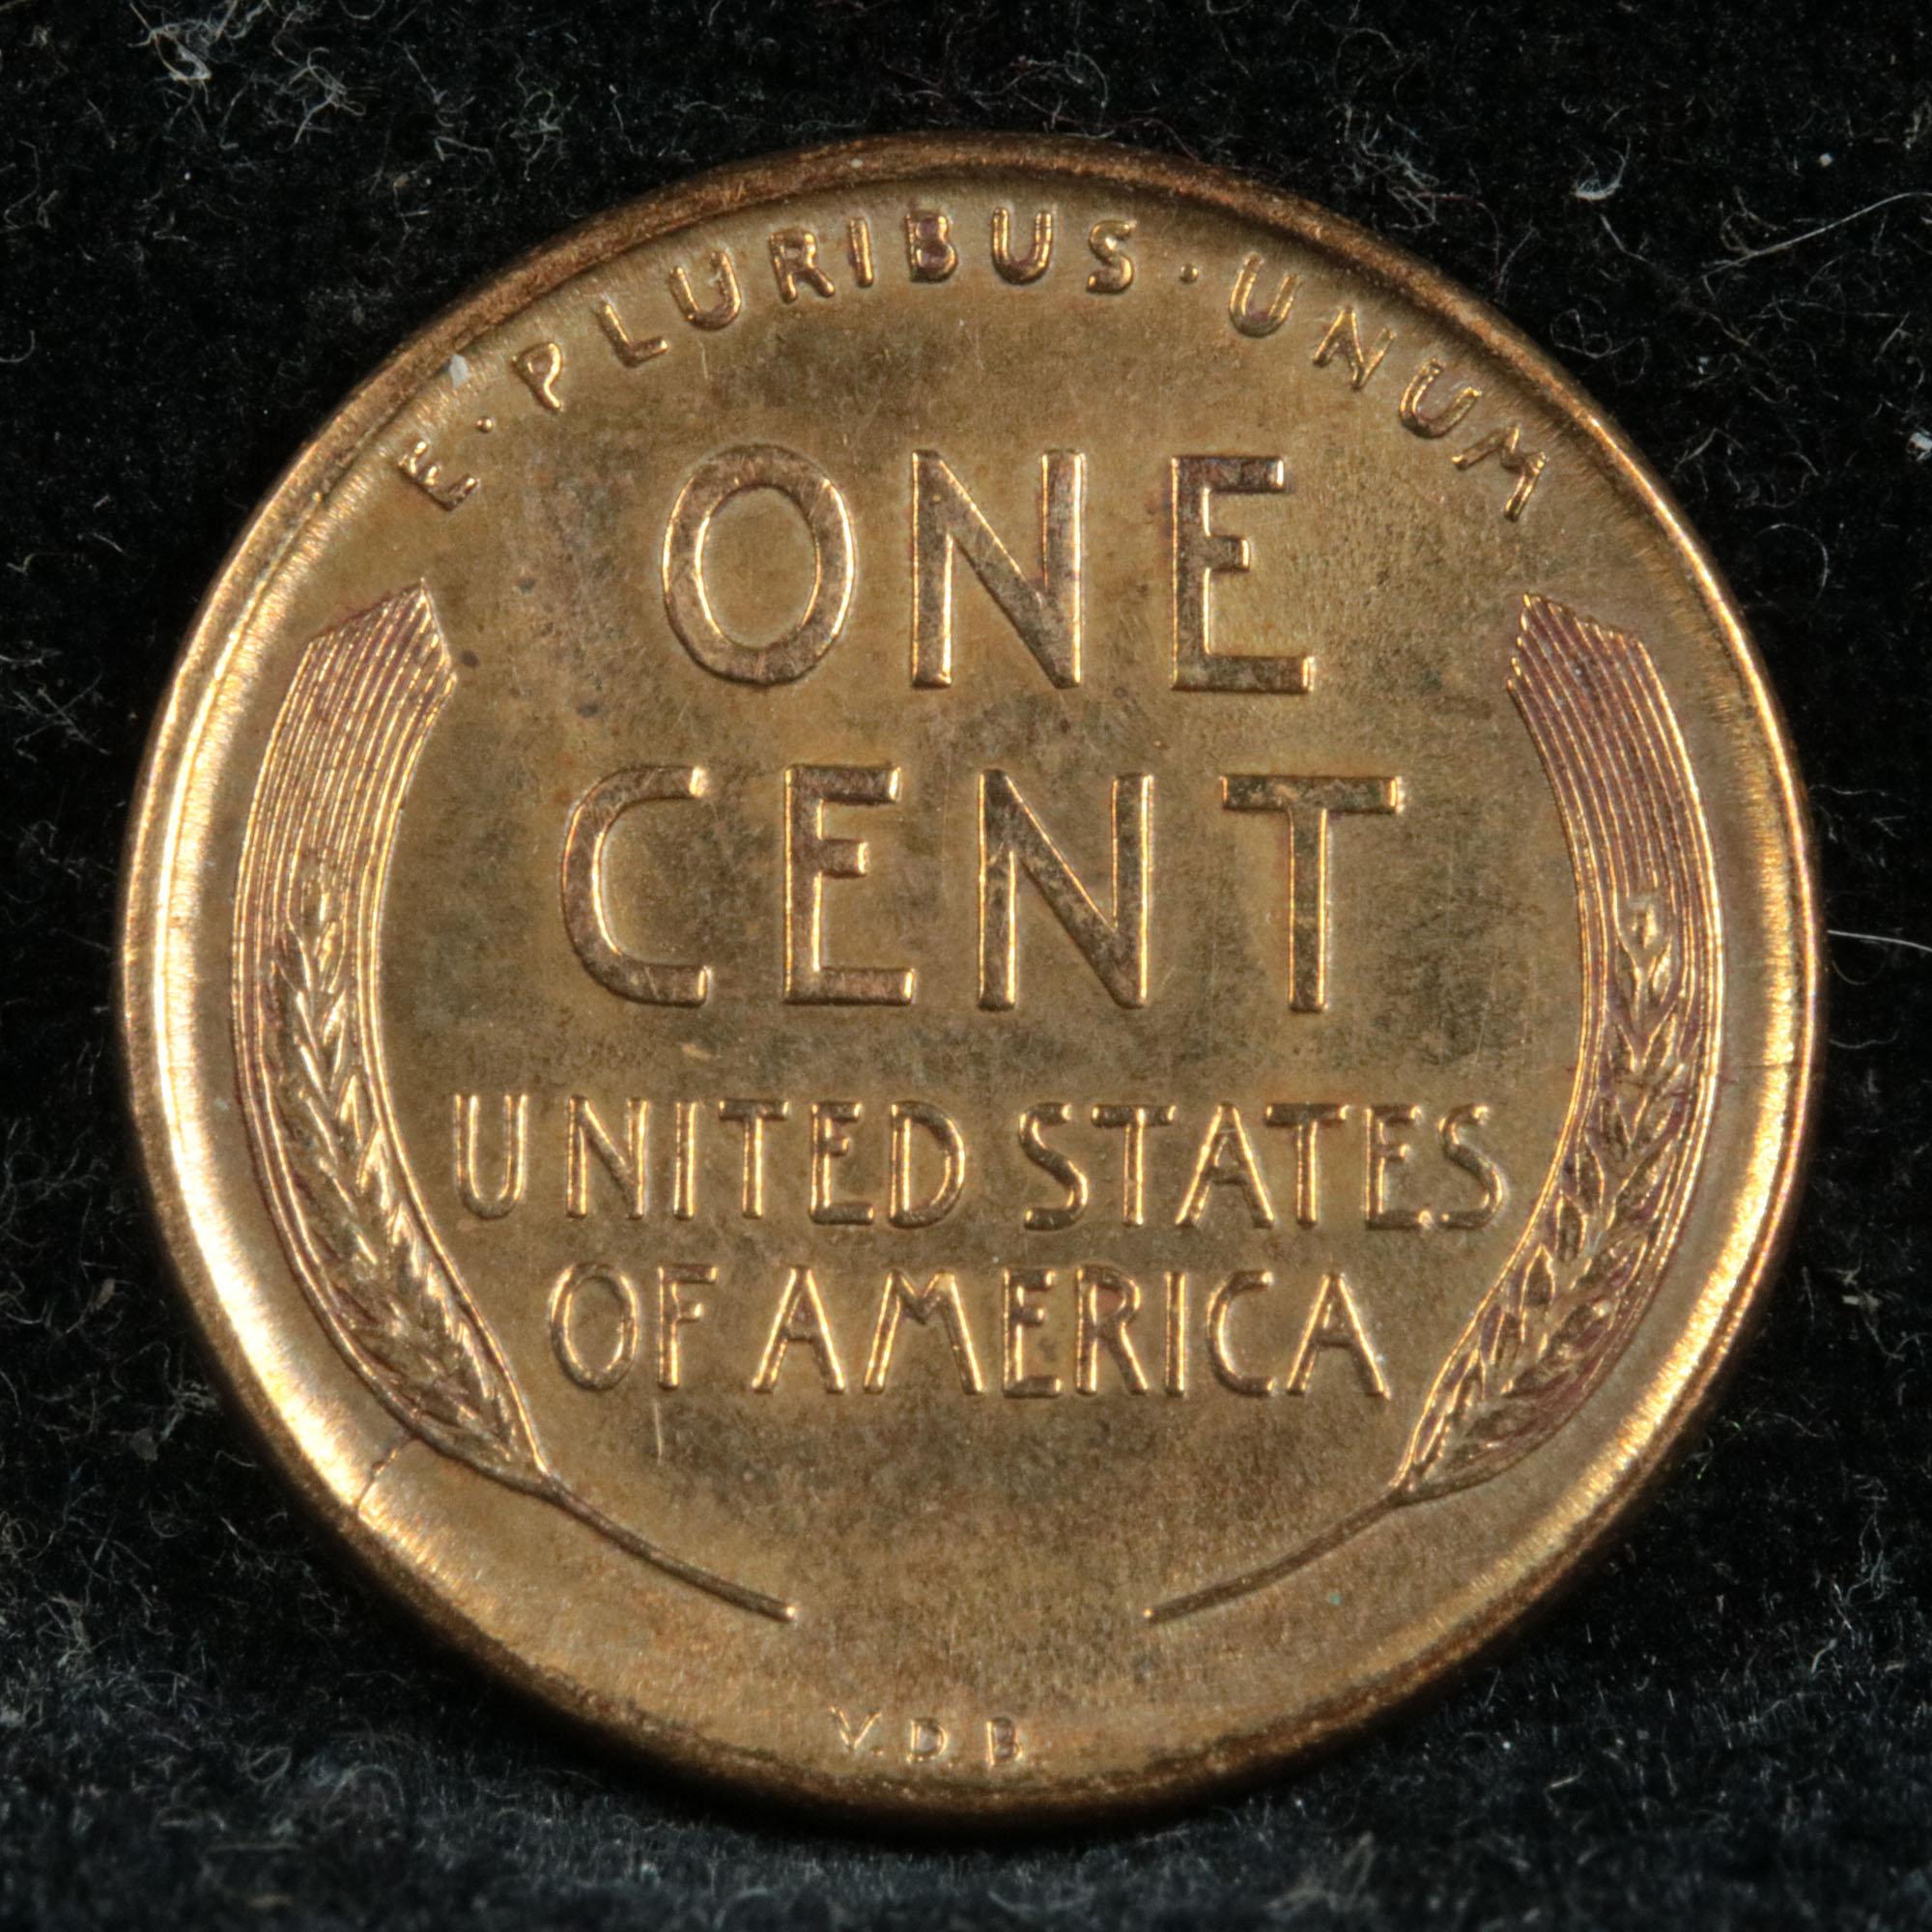 1909 VDB Lincoln Cent 1c Grades Unc Details